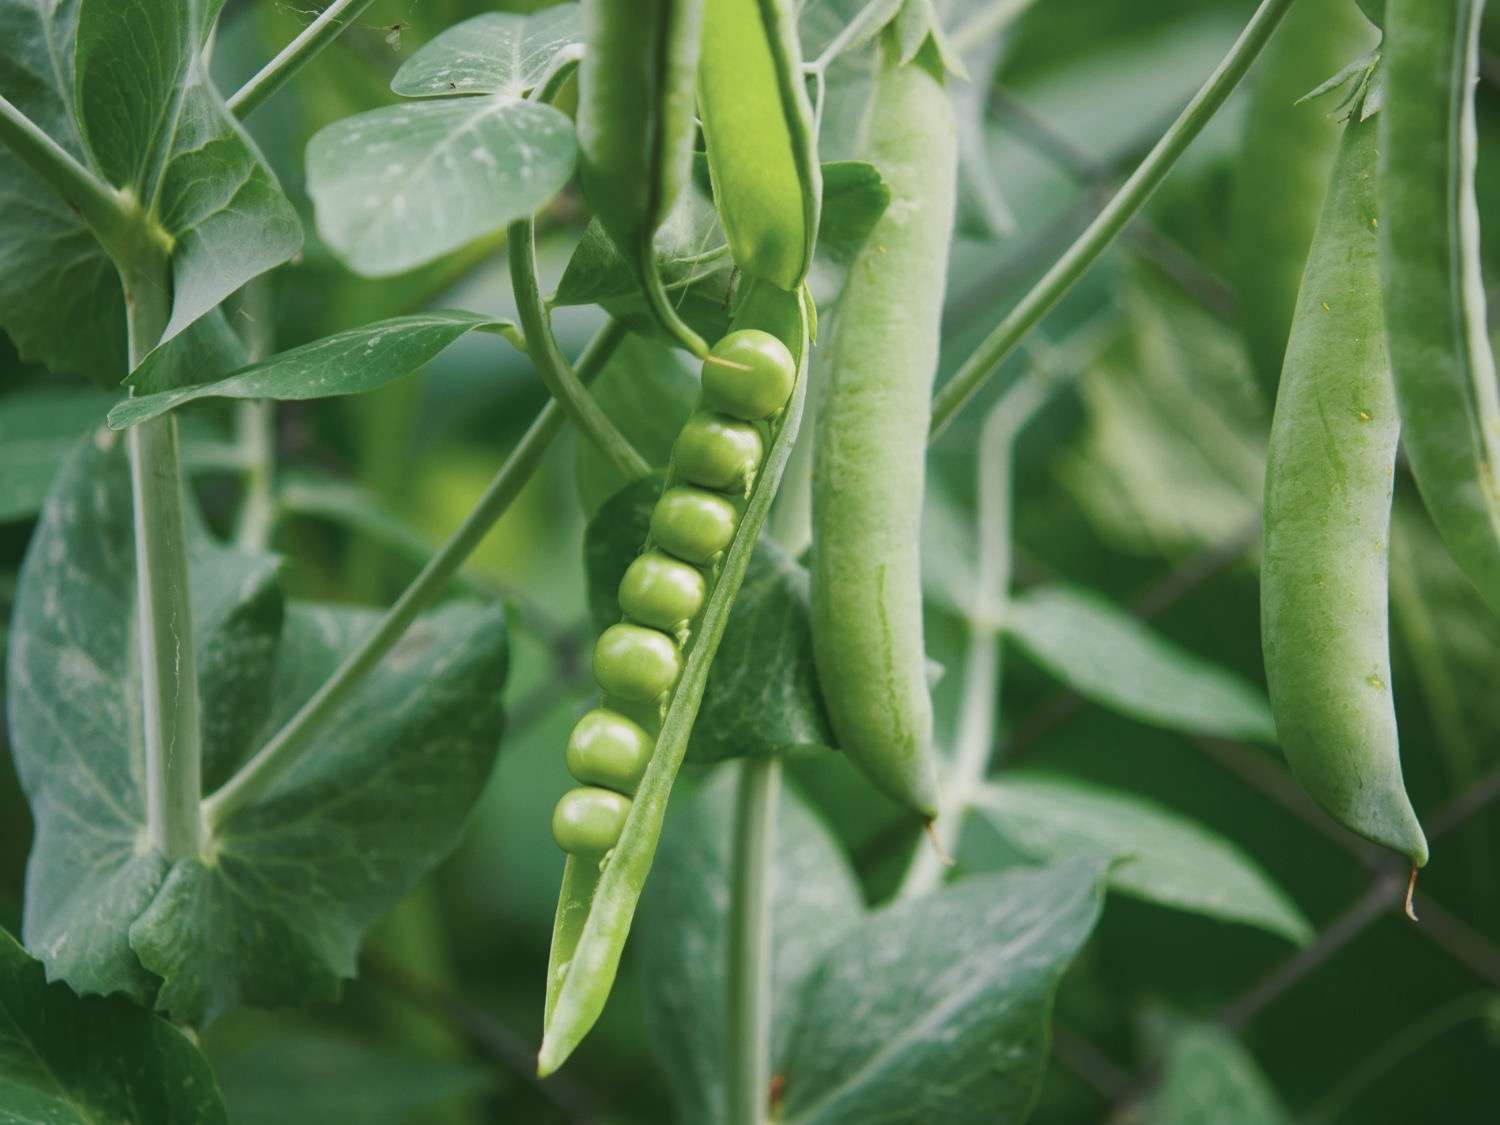 A closeup photo of peas growing in the garden